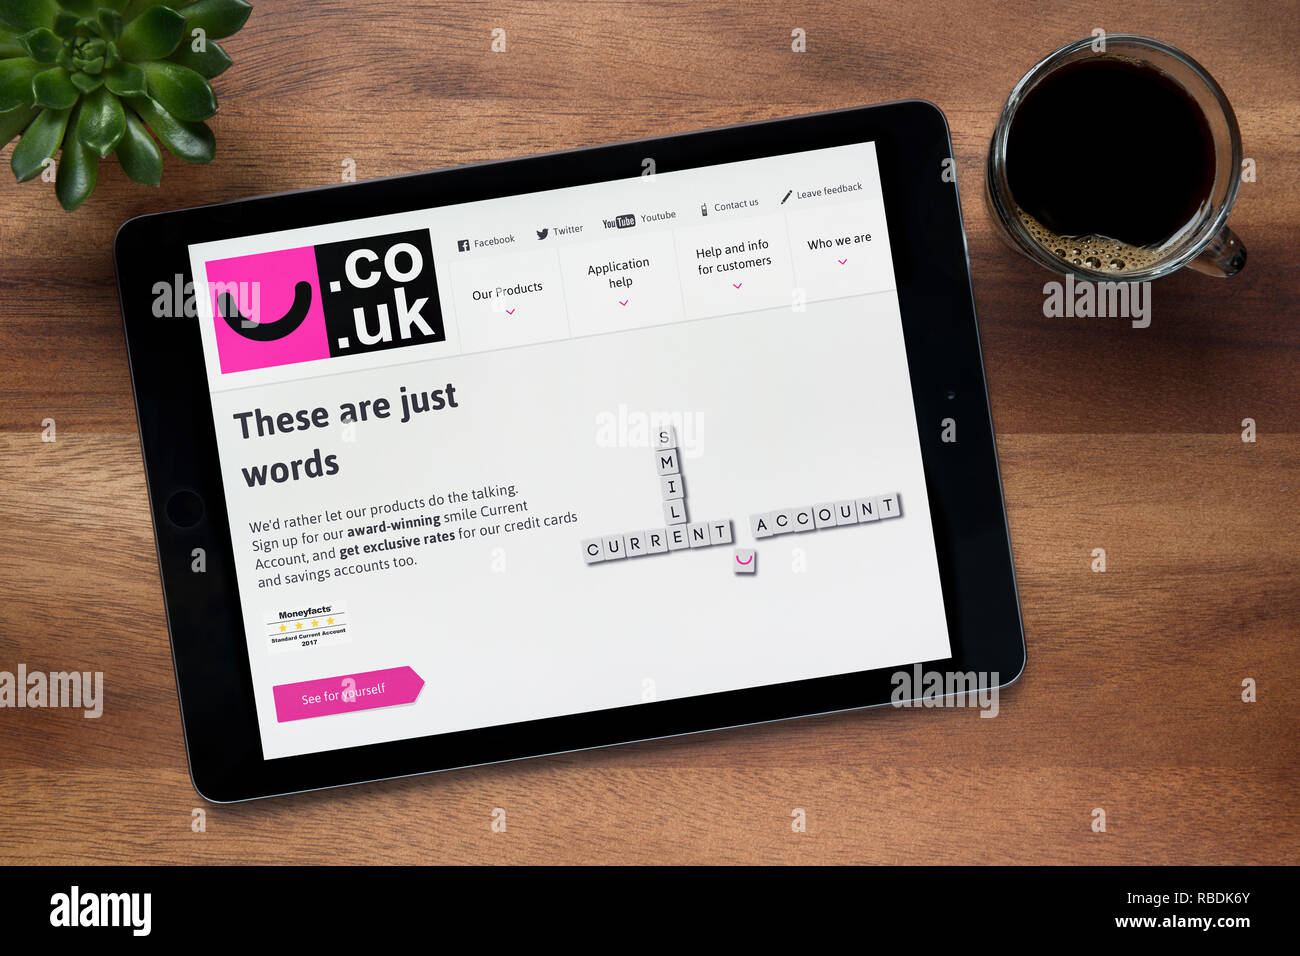 Le site internet de Smile banque est vu sur une tablette iPad, sur une table en bois avec une machine à expresso et d'une plante (usage éditorial uniquement). Banque D'Images